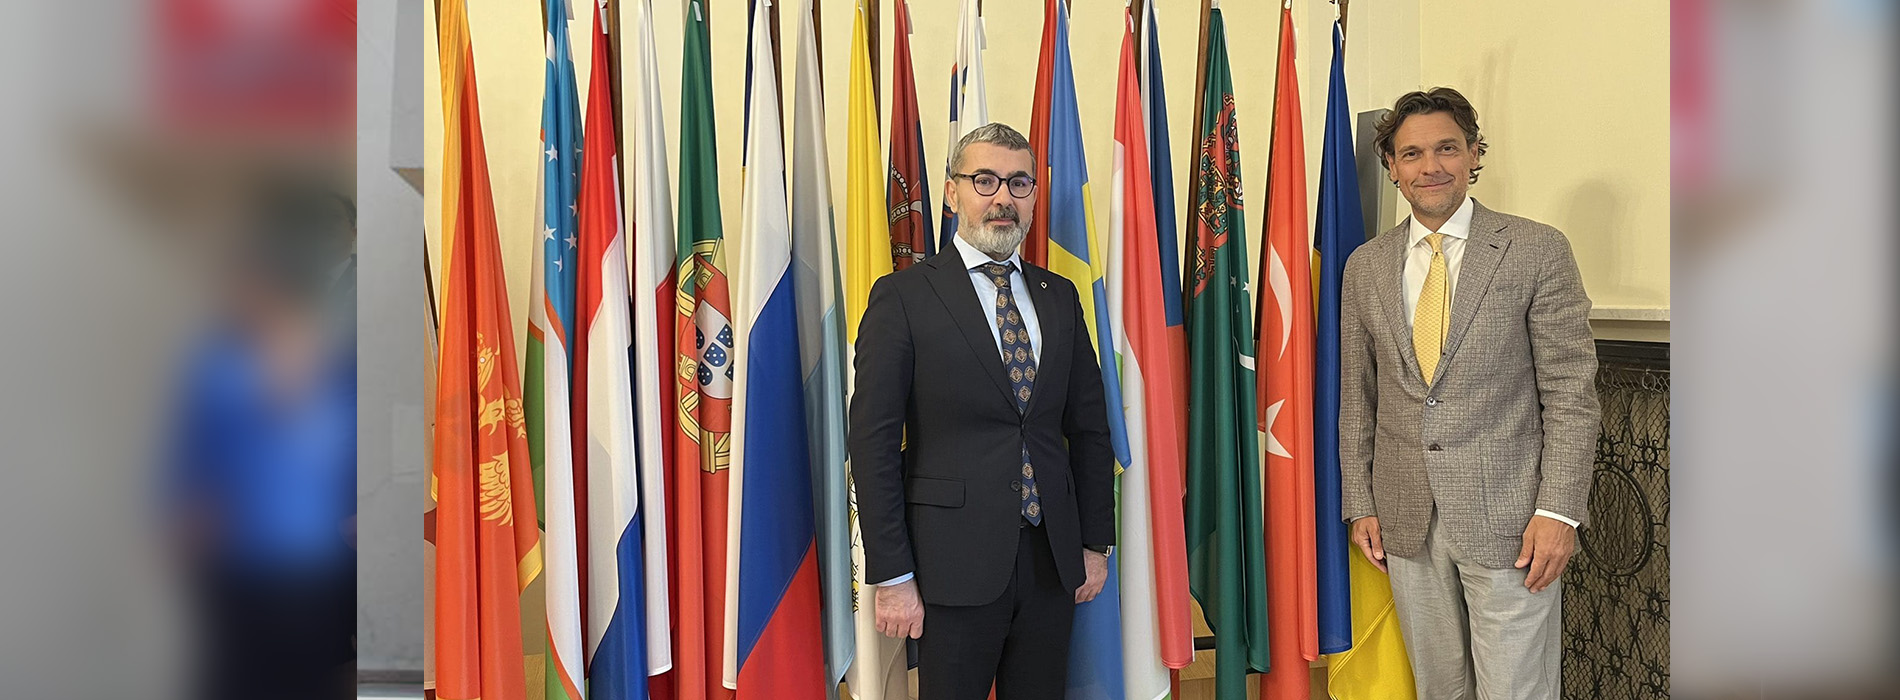 Başkanımız Prof. Dr. Muharrem Kılıç Varşova'da Temaslarda Bulundu